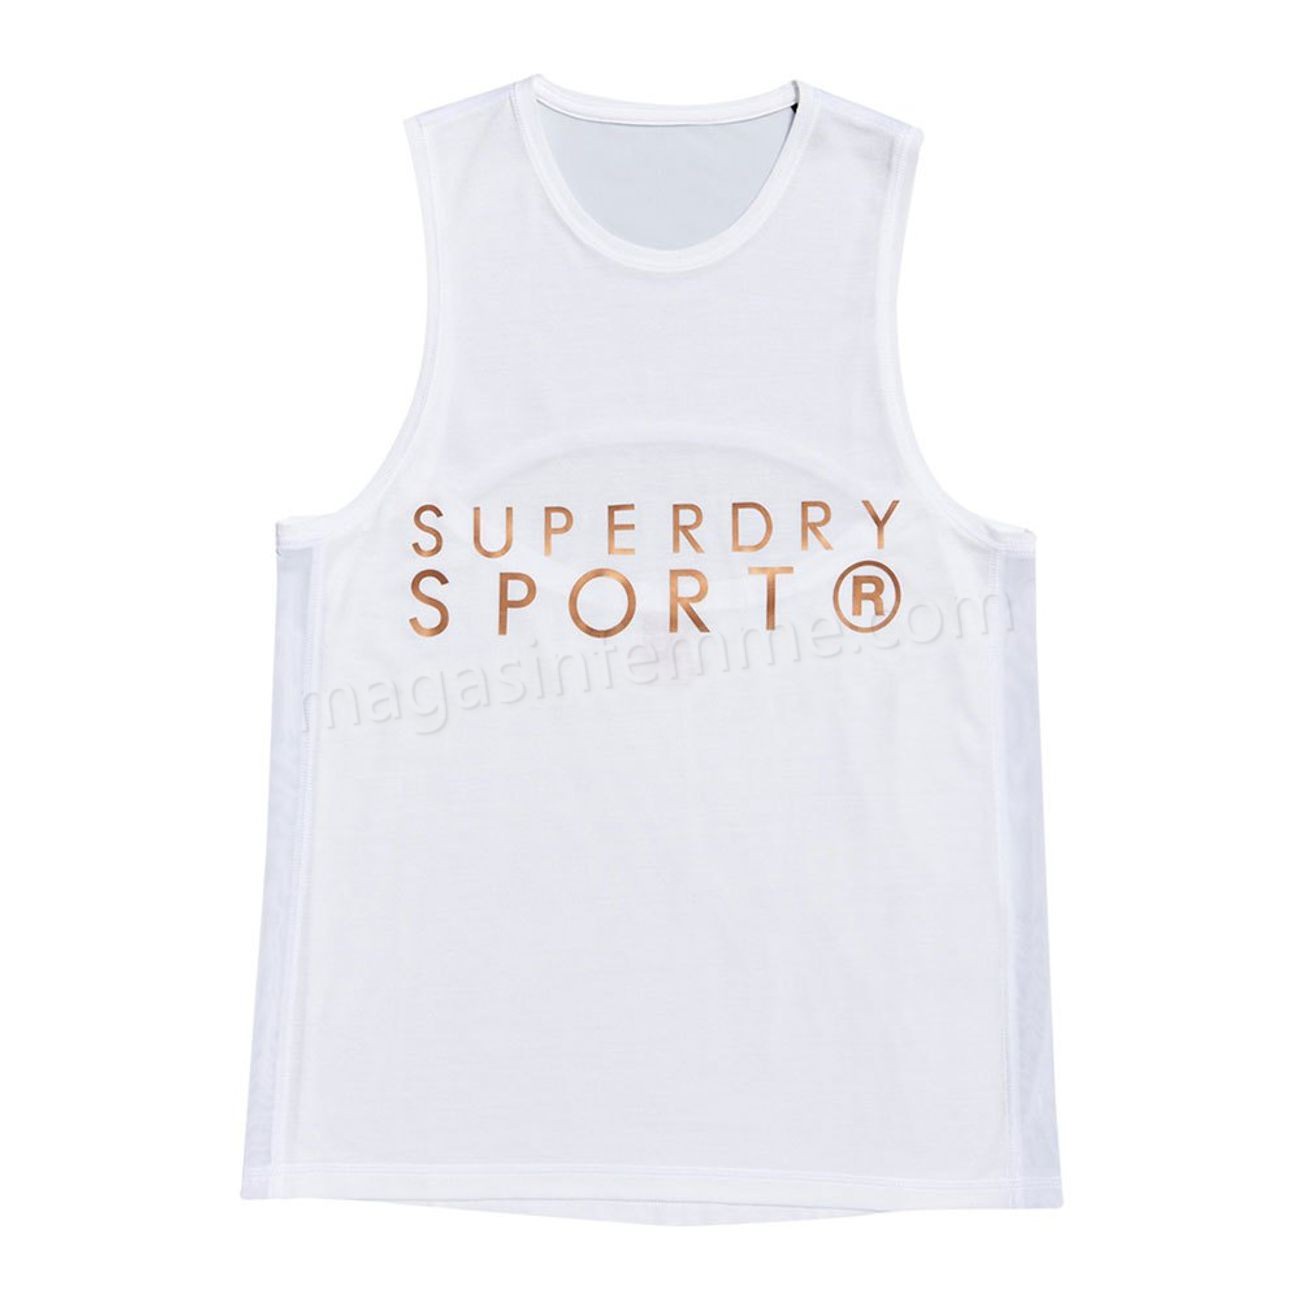 Superdry-Fitness femme SUPERDRY Superdry Active Studio Luxe en solde - Superdry-Fitness femme SUPERDRY Superdry Active Studio Luxe en solde